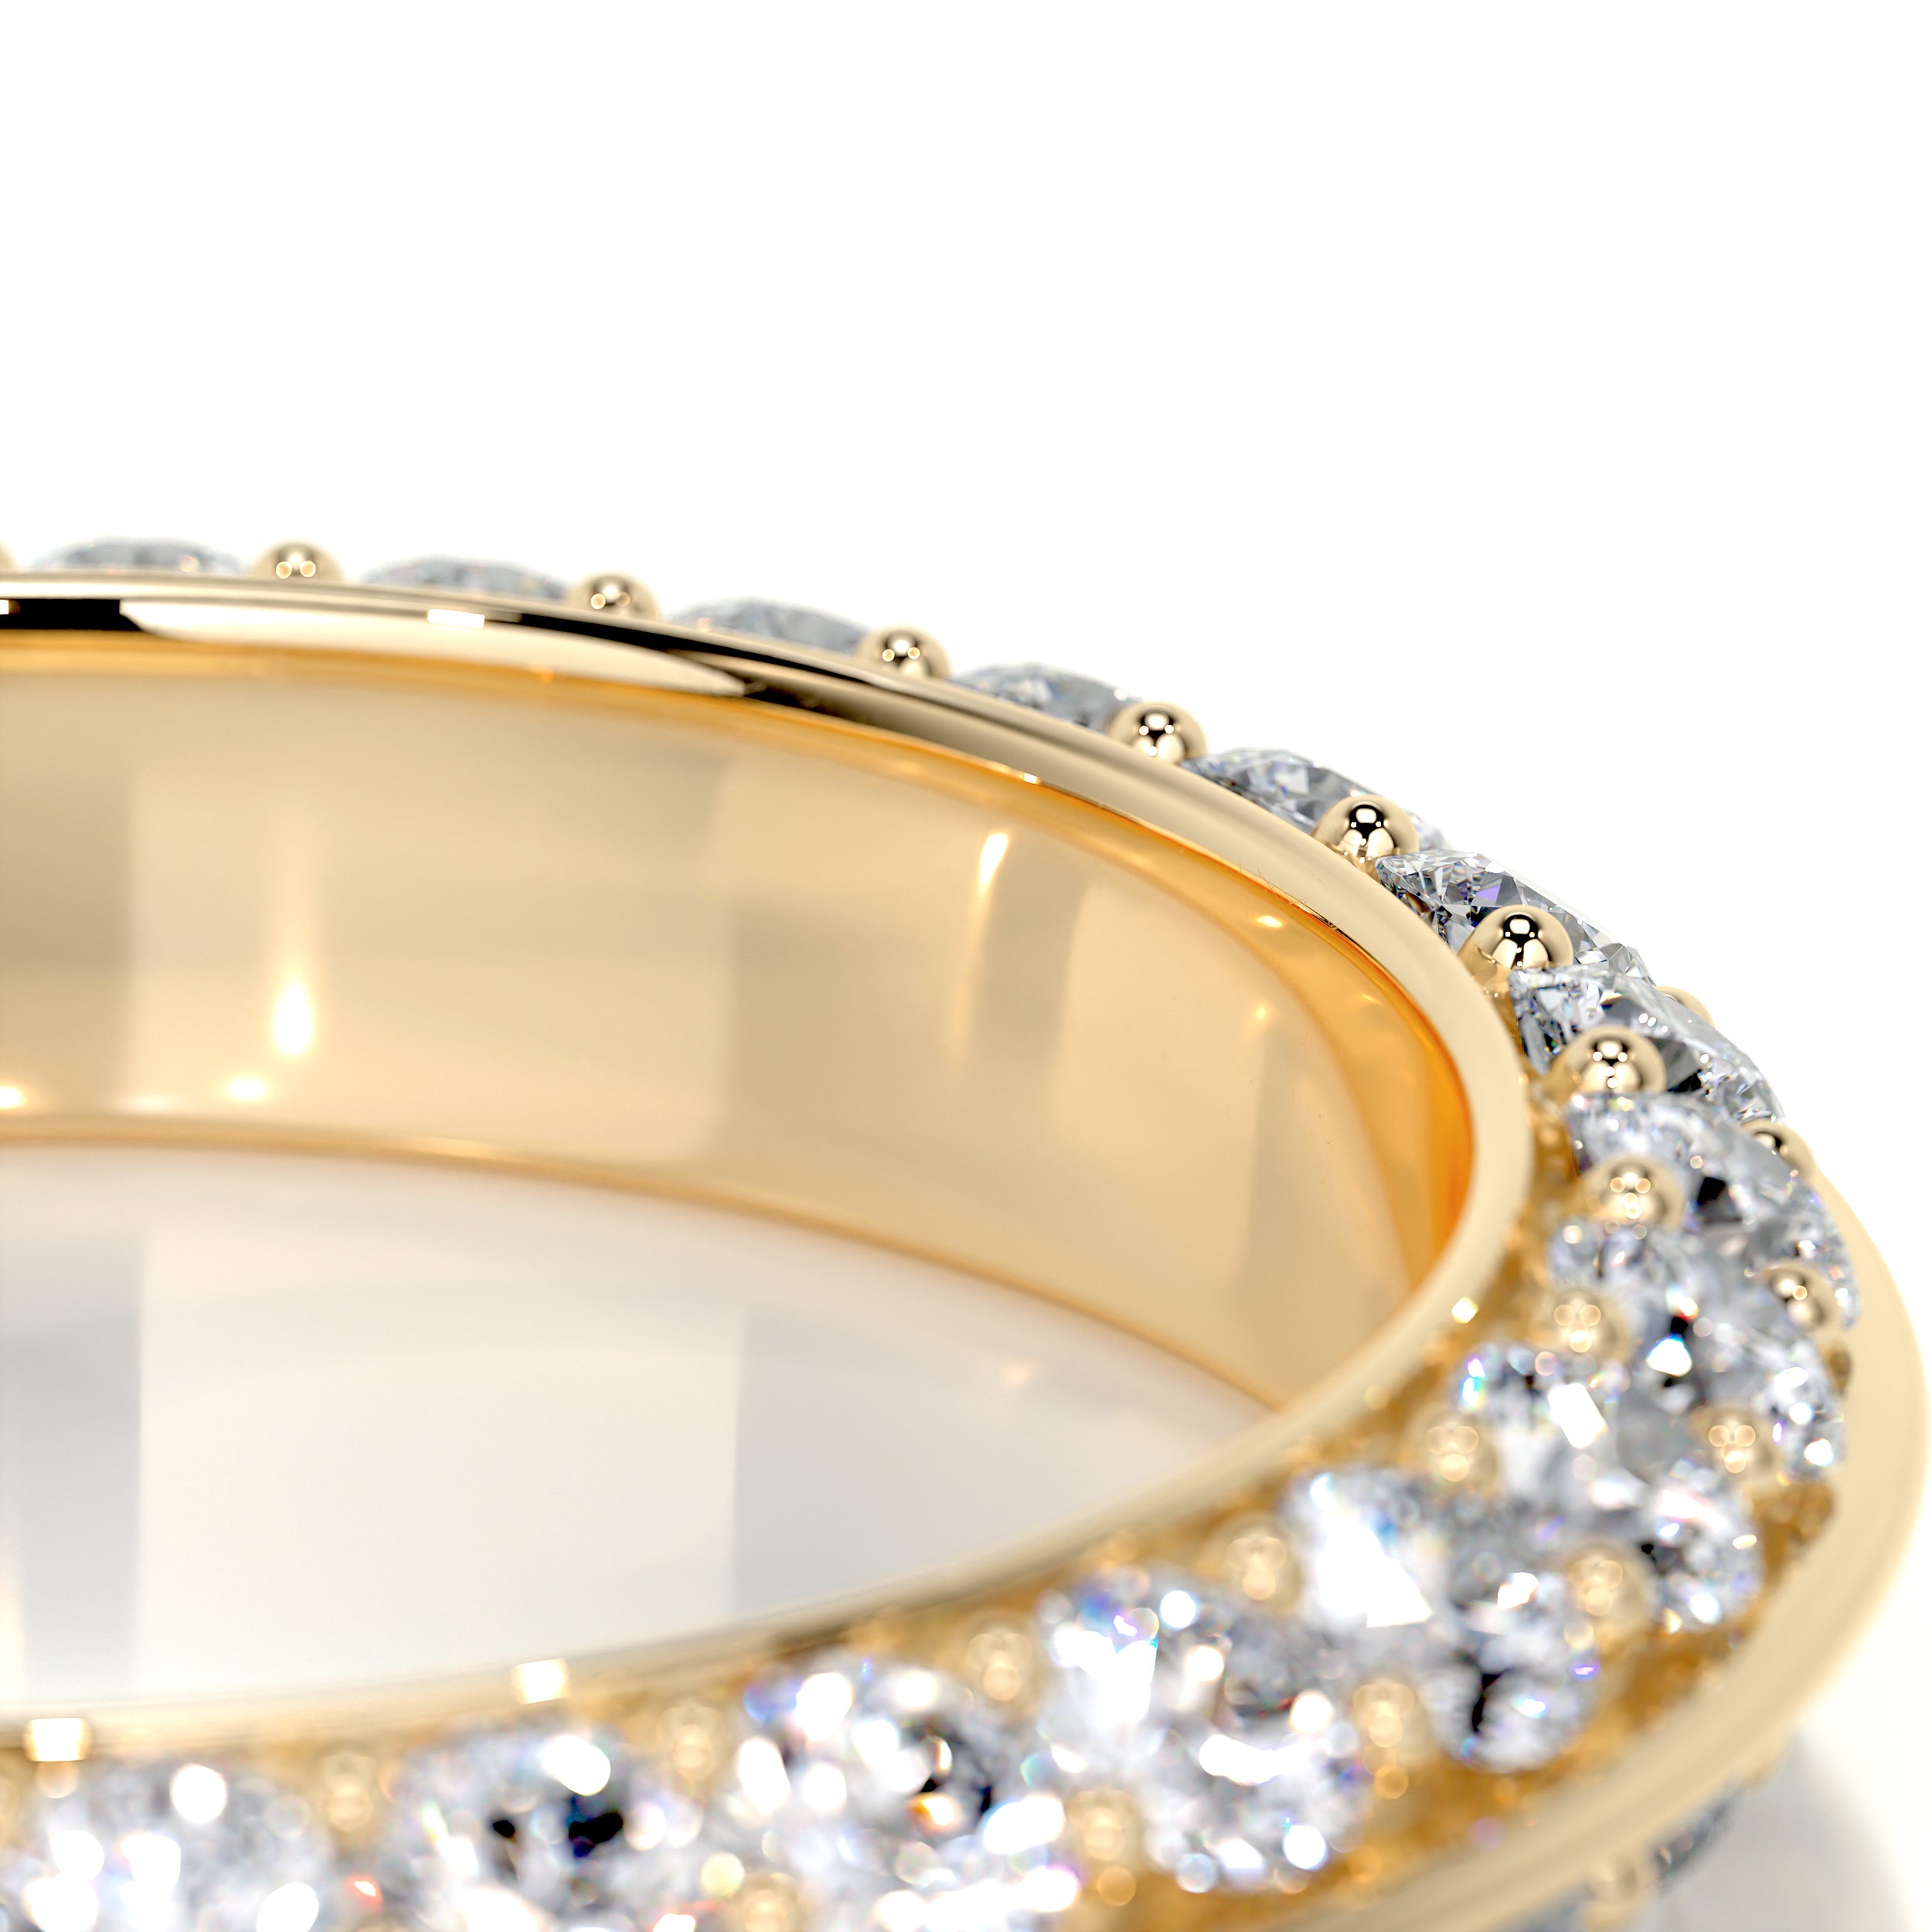 Eliana Wedding Ring   (0.50 Carat) -18K Yellow Gold